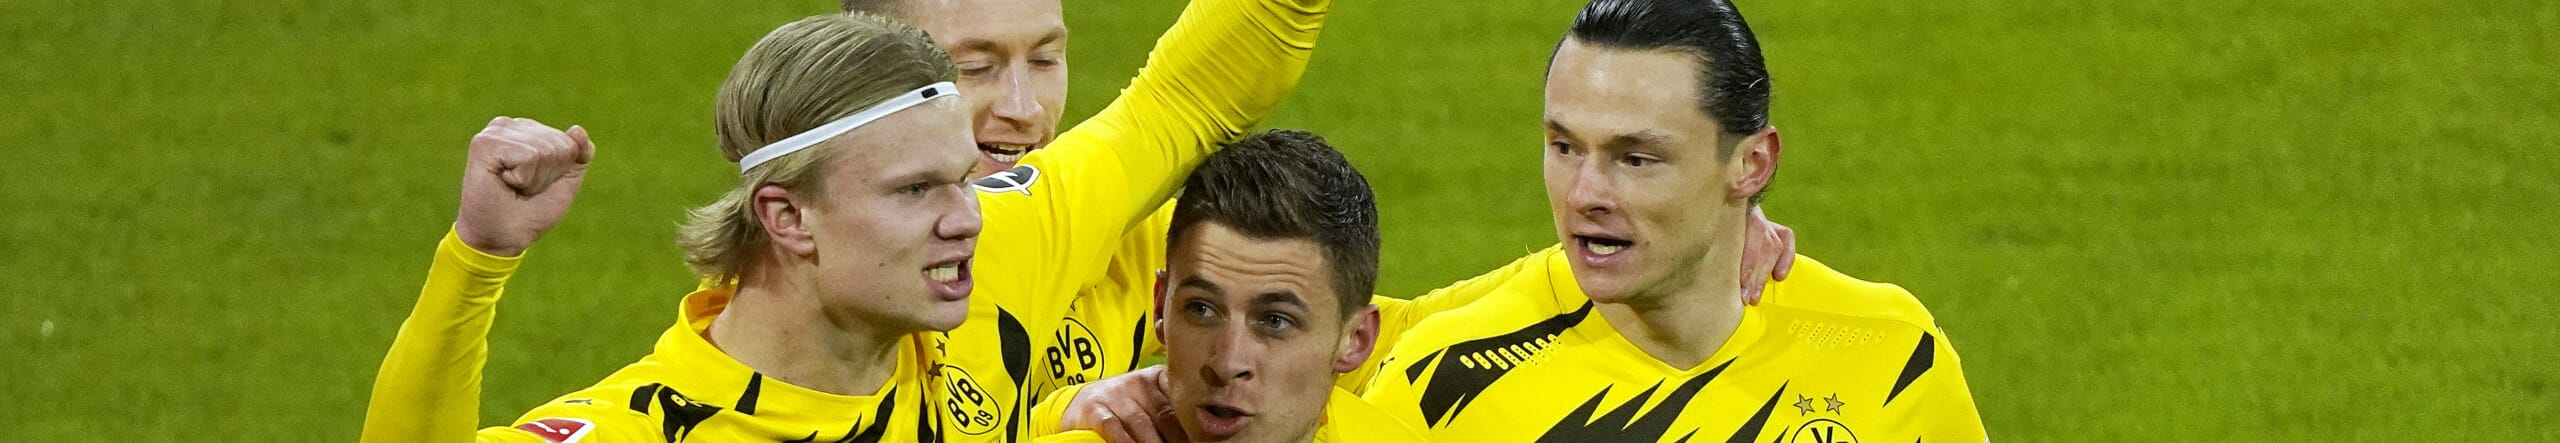 Borussia Dortmund-Siviglia, Haaland vuole lasciare il segno anche in Europa